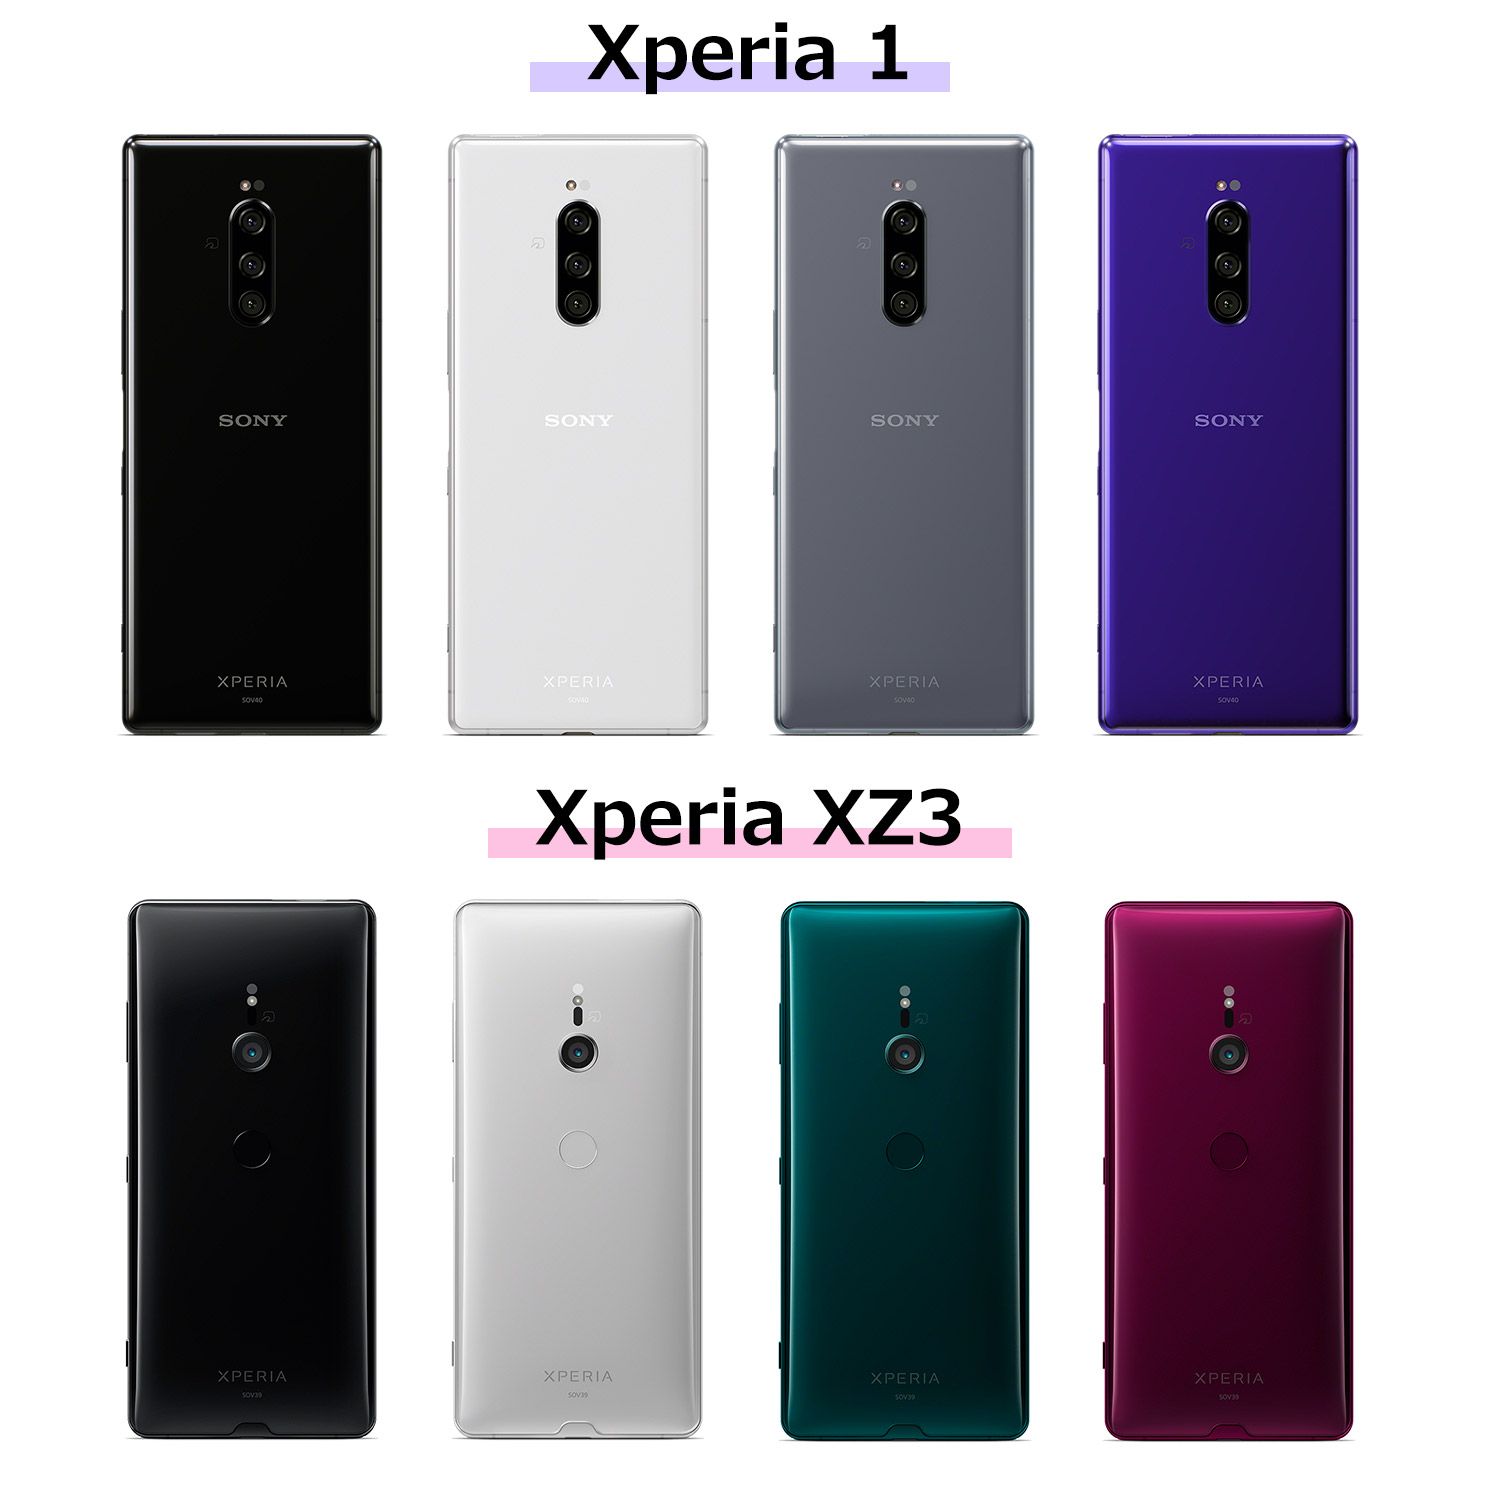 Xperia 1、Xperia XZ3のカラーバリエーション